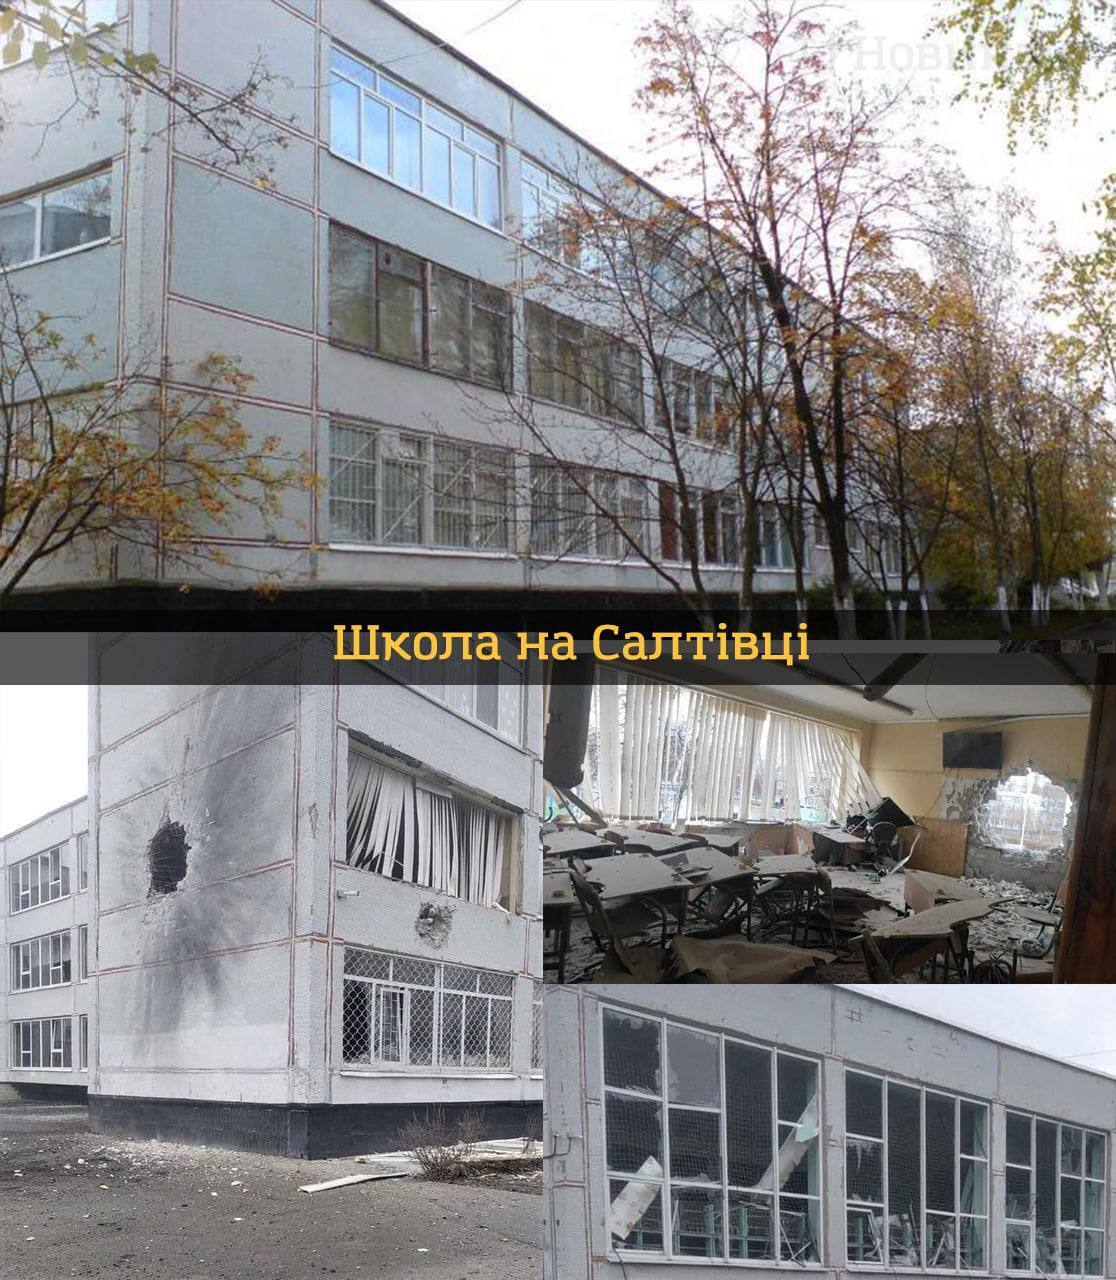 Украинские образовательные учреждения ''до'' и ''после'' полномасштабного вторжения рф